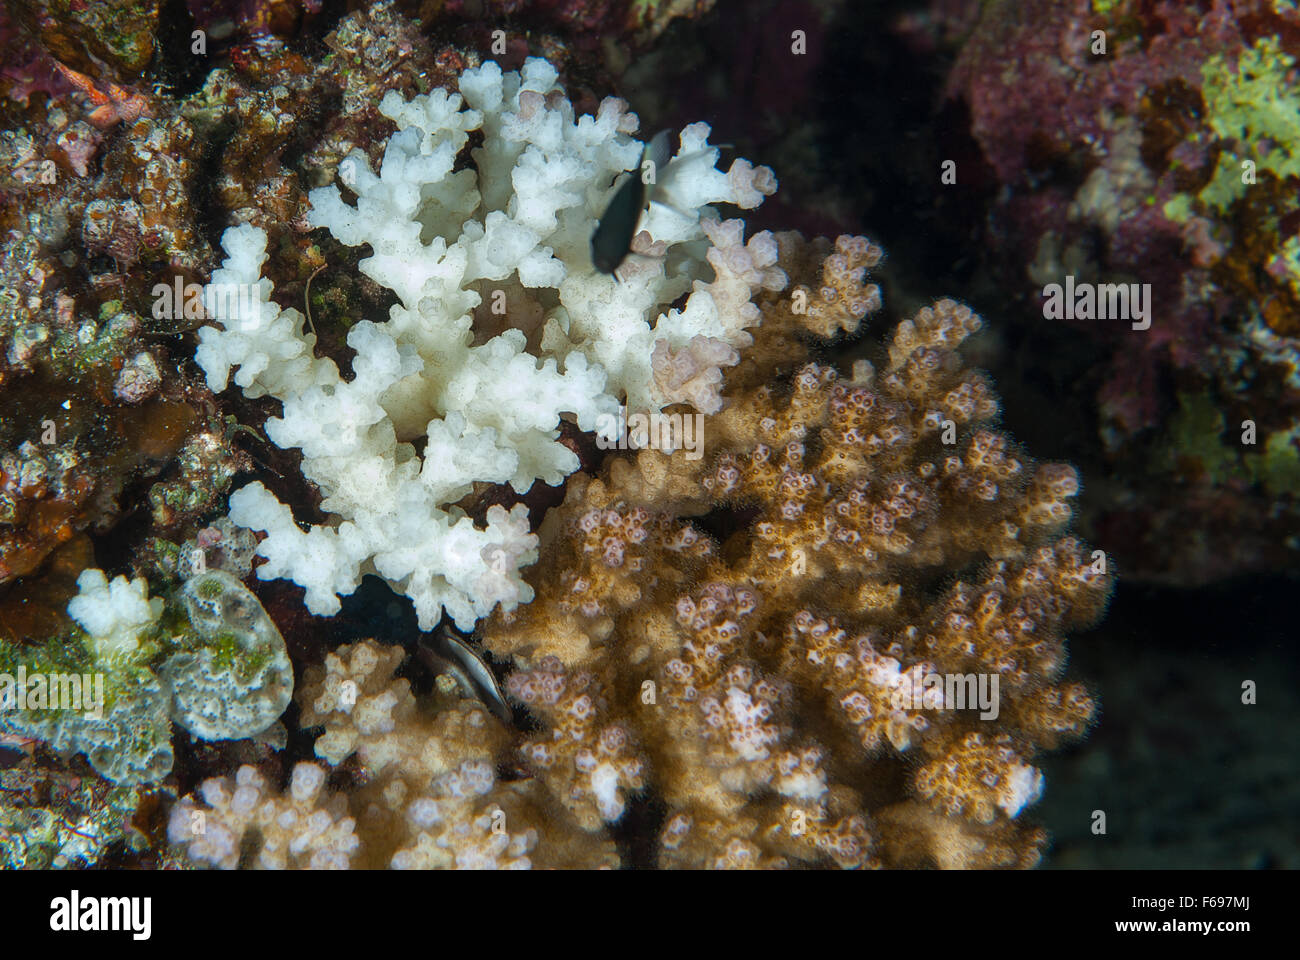 Blanqueamiento de corales ramificados, Pocillopora verrucosa, Pocilloporidae, Sharm el Sheikh, Mar Rojo, Egipto Foto de stock